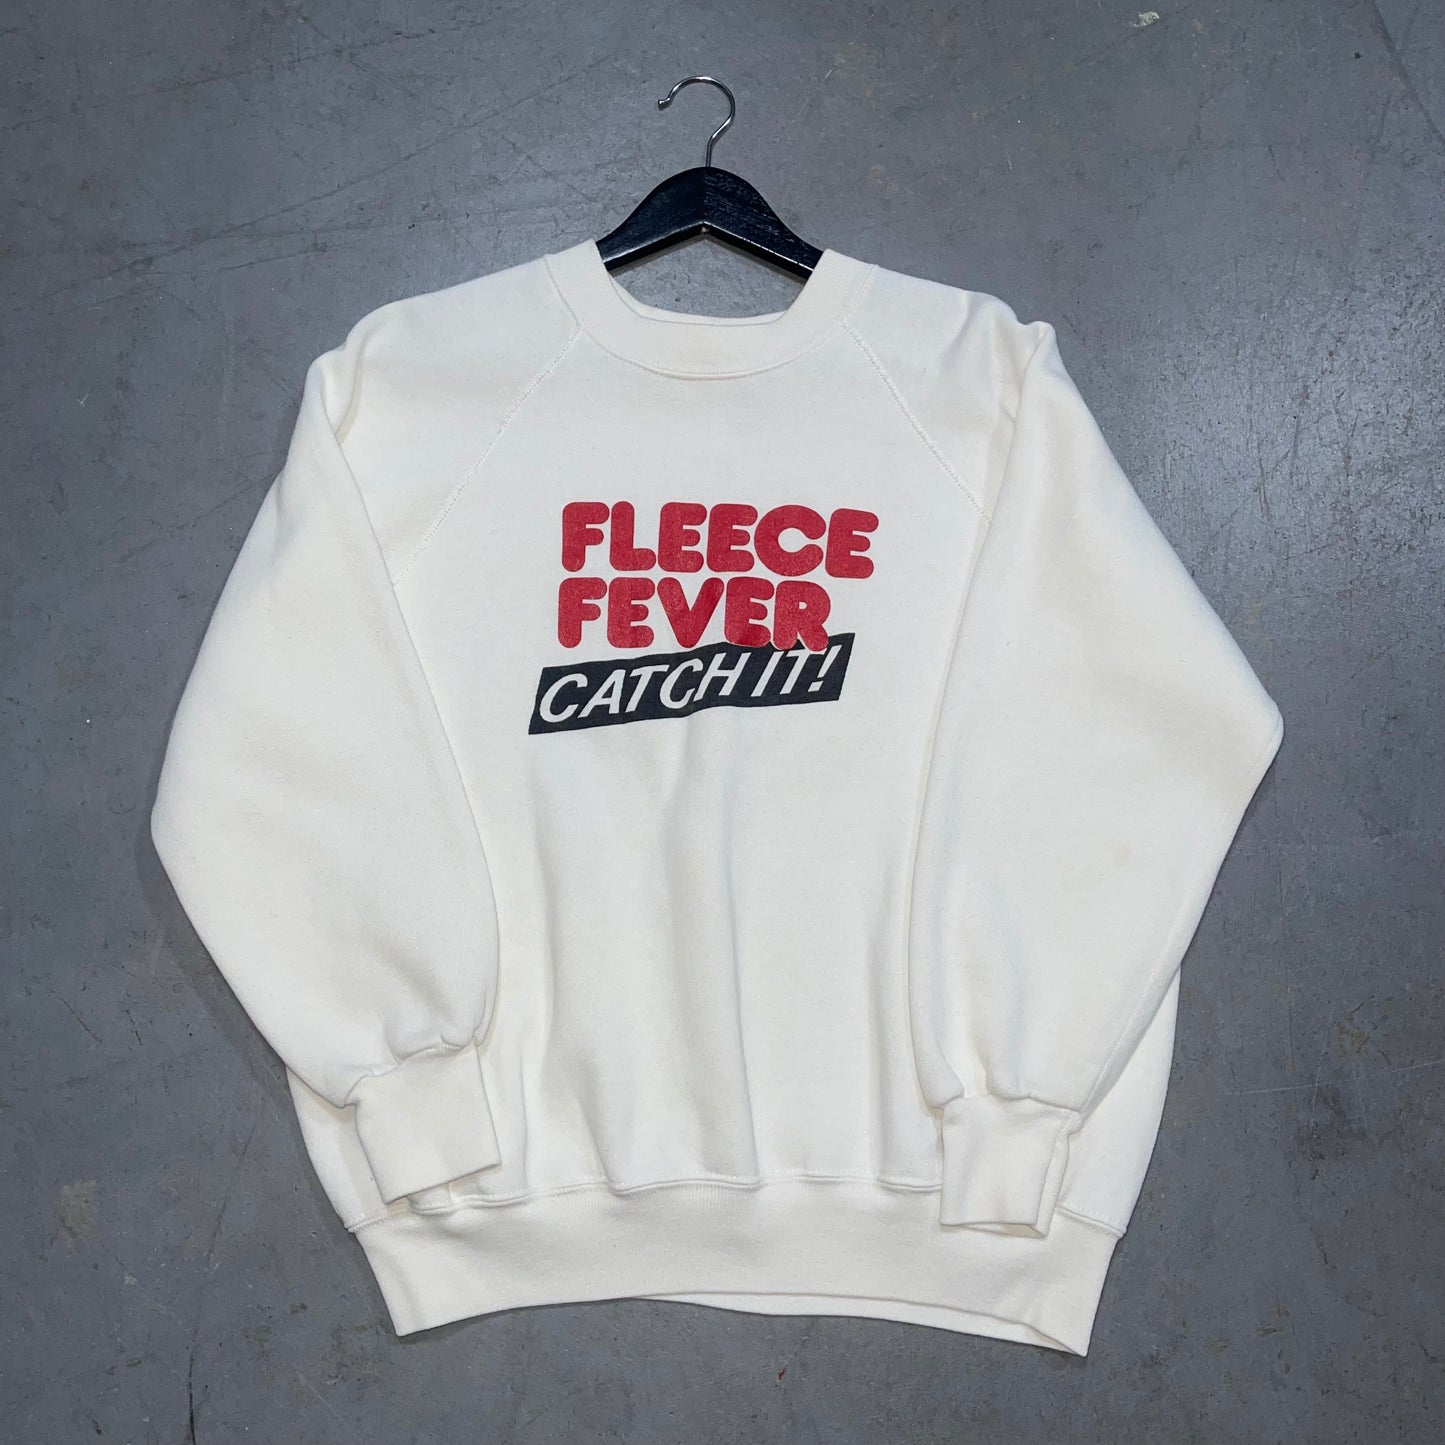 Vintage 80’s Fleece Fever Catch It! Crewneck. Size XL